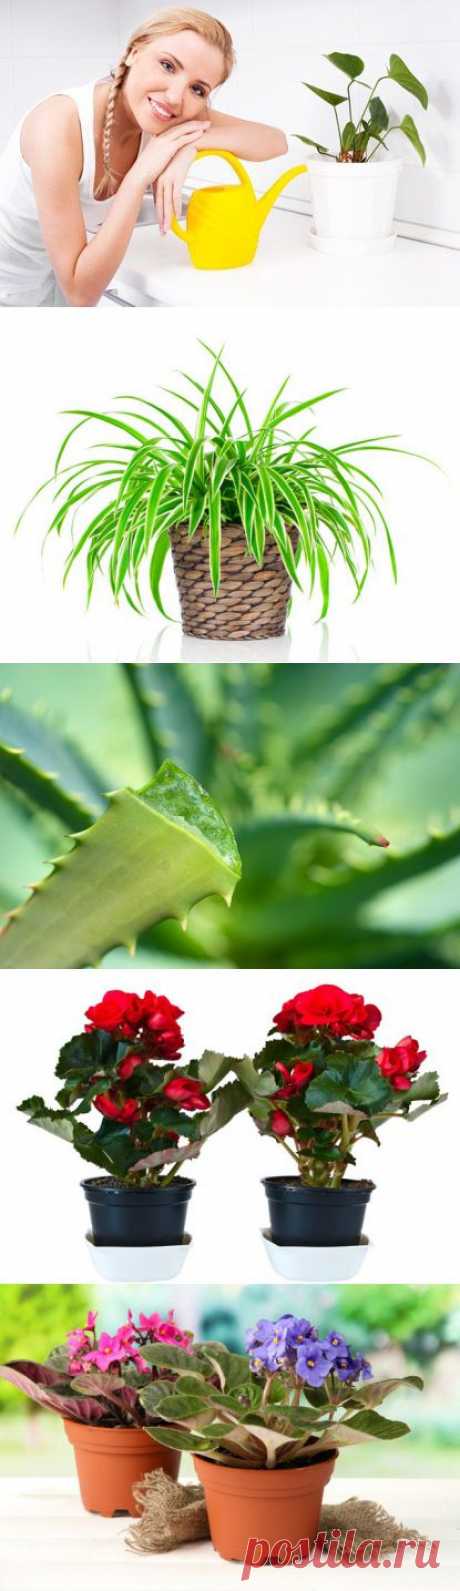 Топ-10 комнатных растений, полезных для здоровья / Домоседы